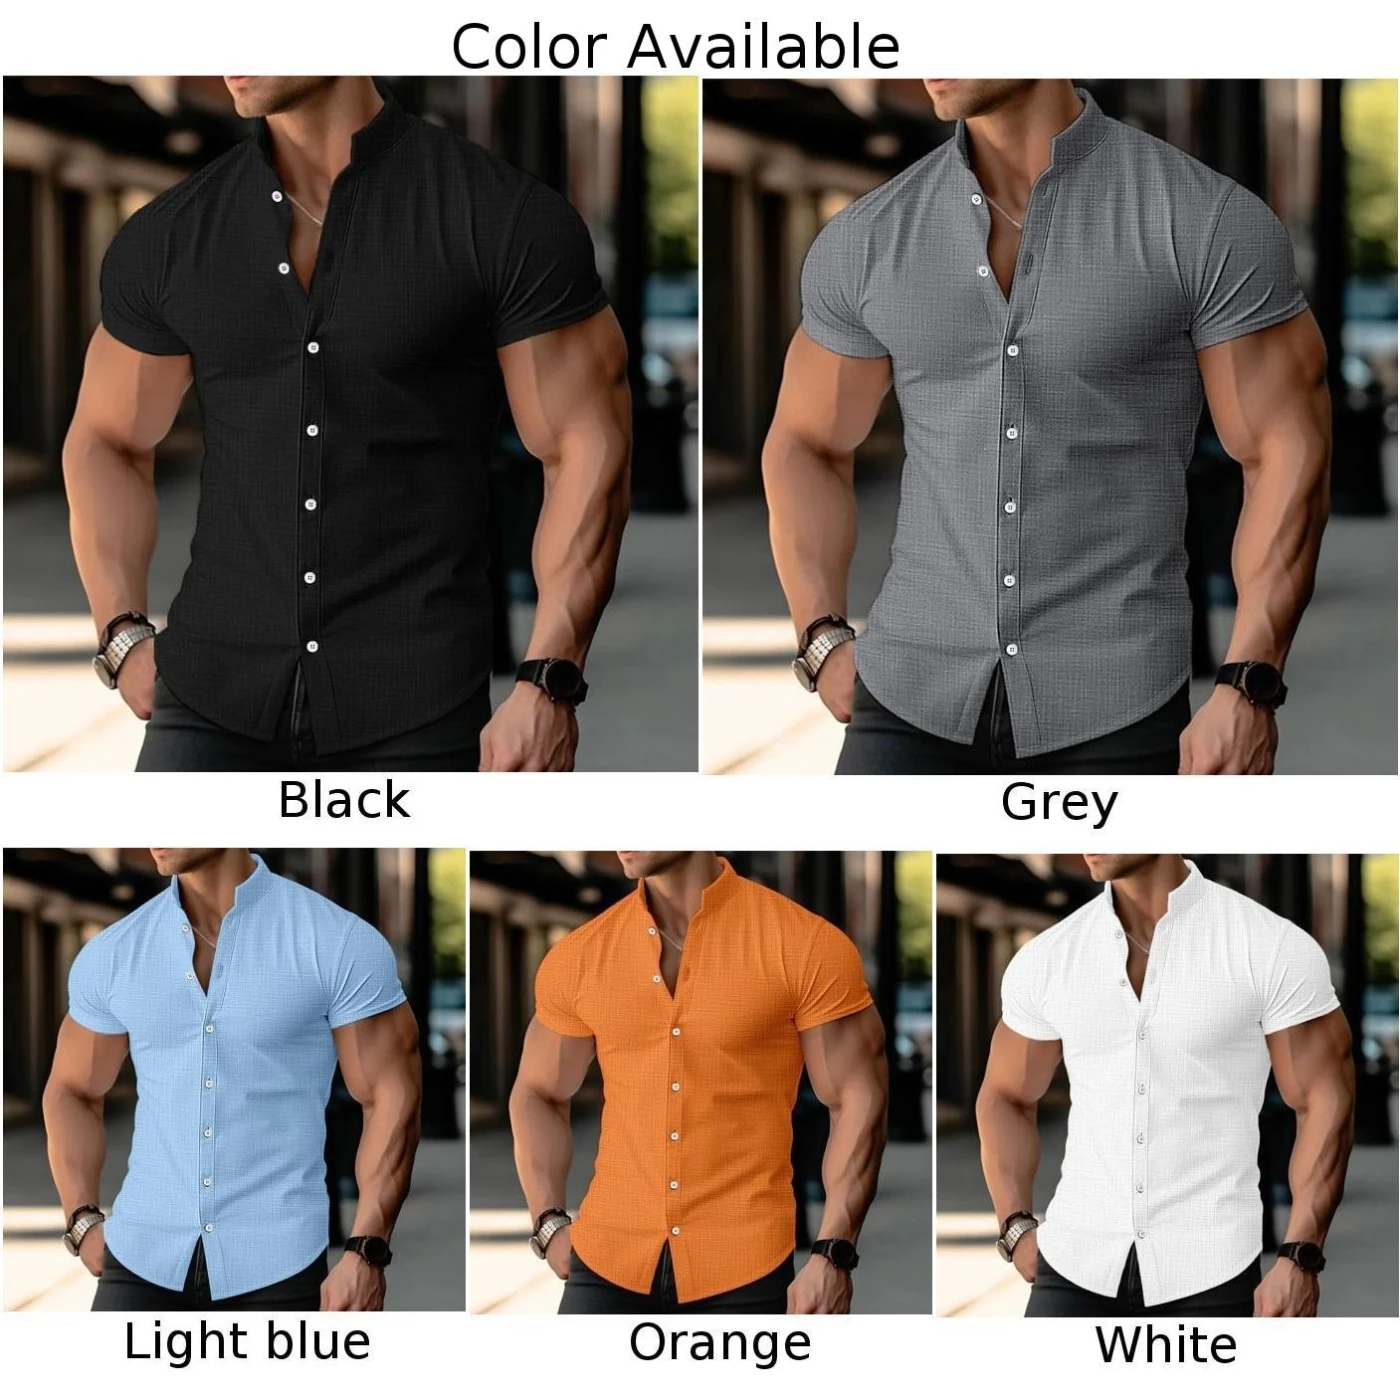 Camisa Regular Masculina, Poliéster, Blusa com Colarinho, Botão Abotoado, Músculo Fitness, Confortável, Casual, 1 pc